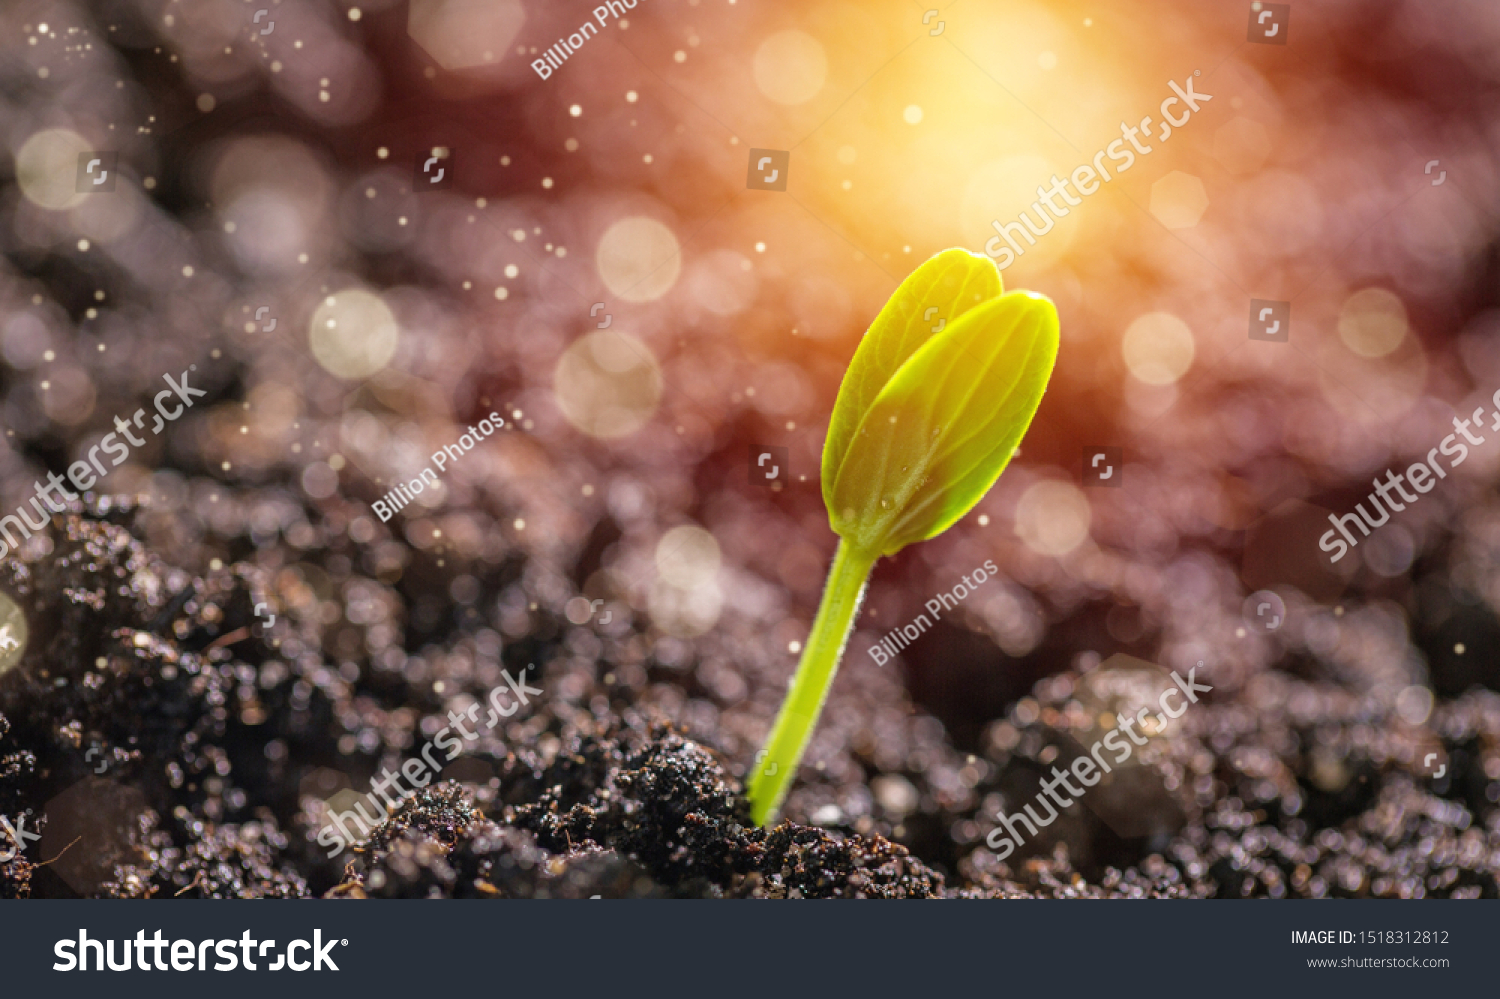 Sprout grows through urban asphalt ground #1518312812